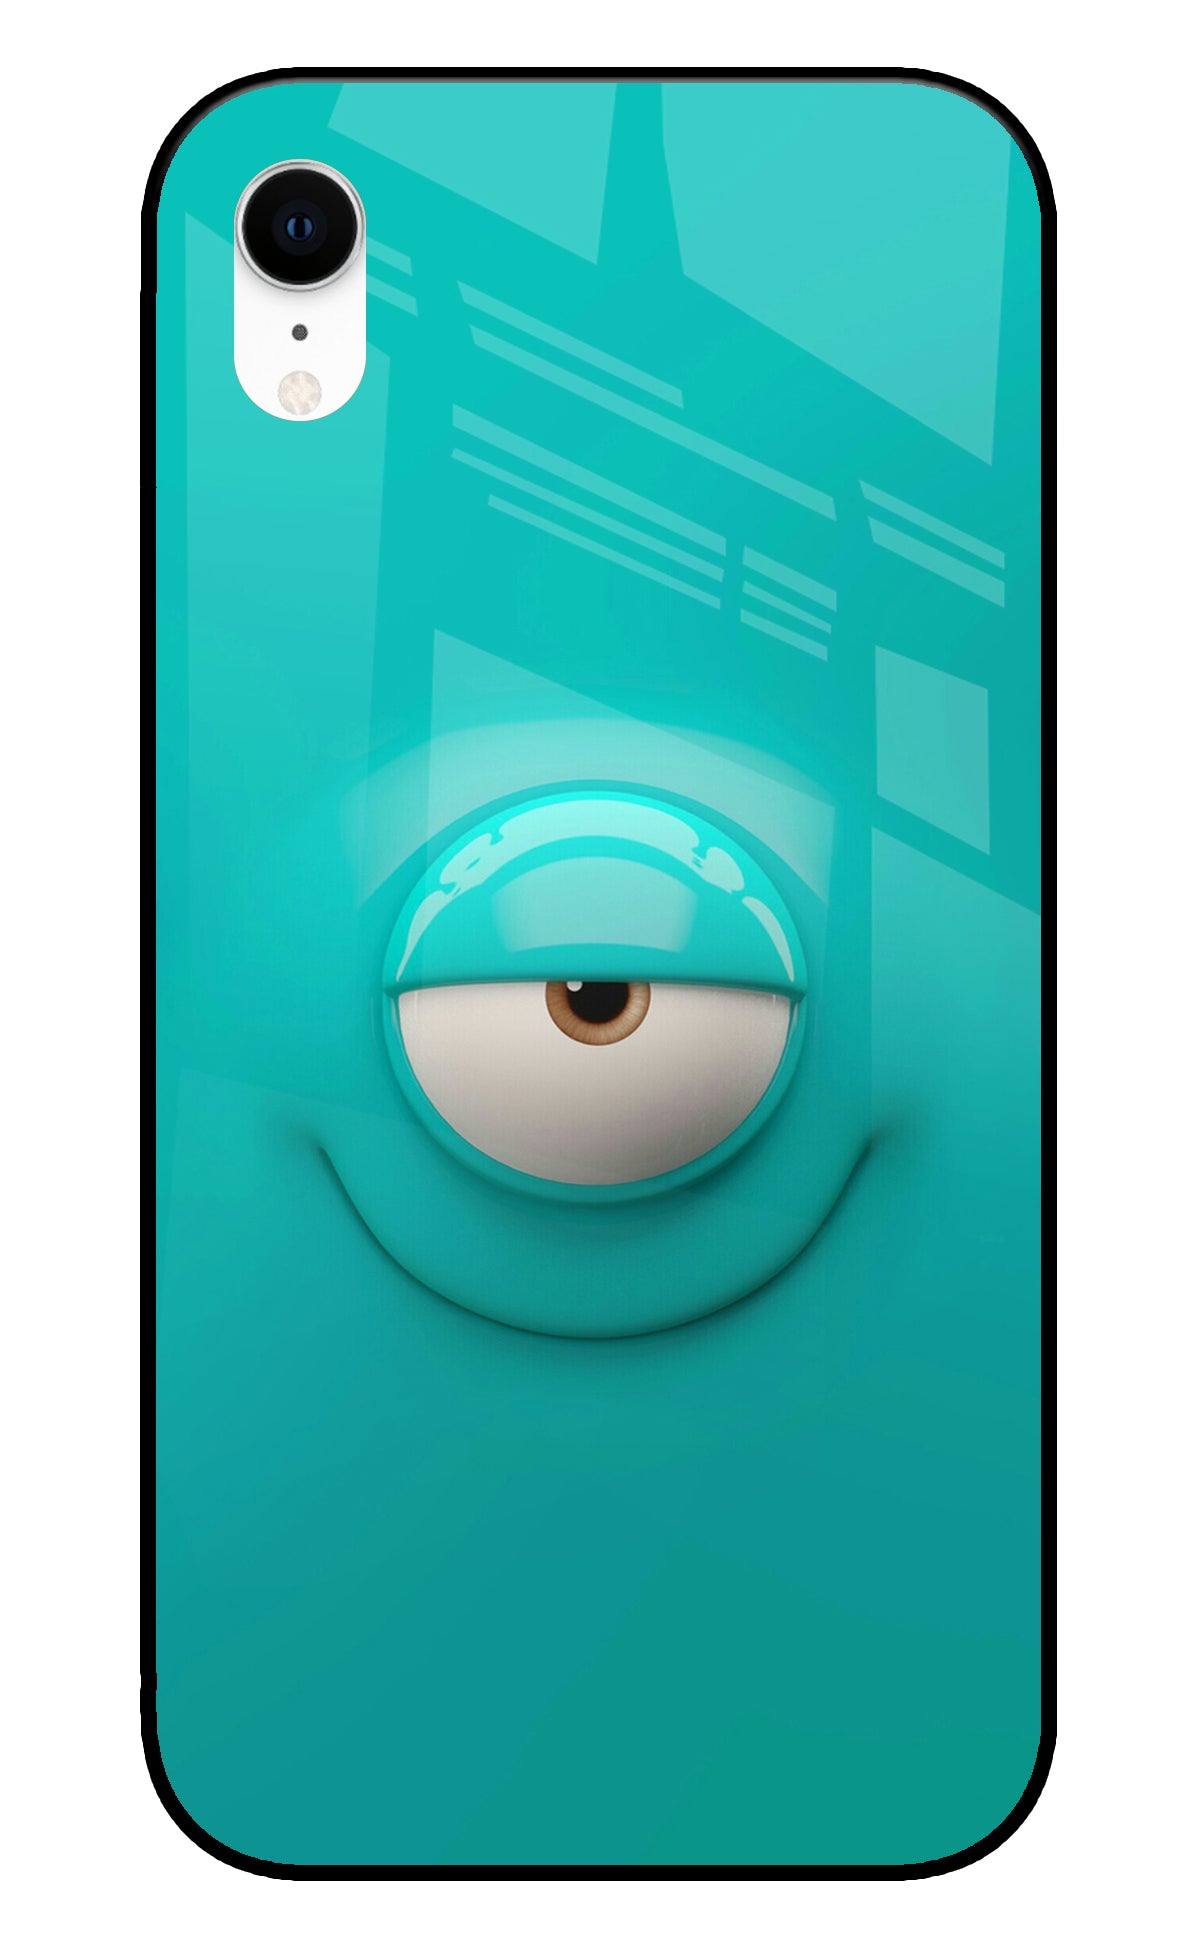 One Eye Cartoon iPhone XR Glass Cover